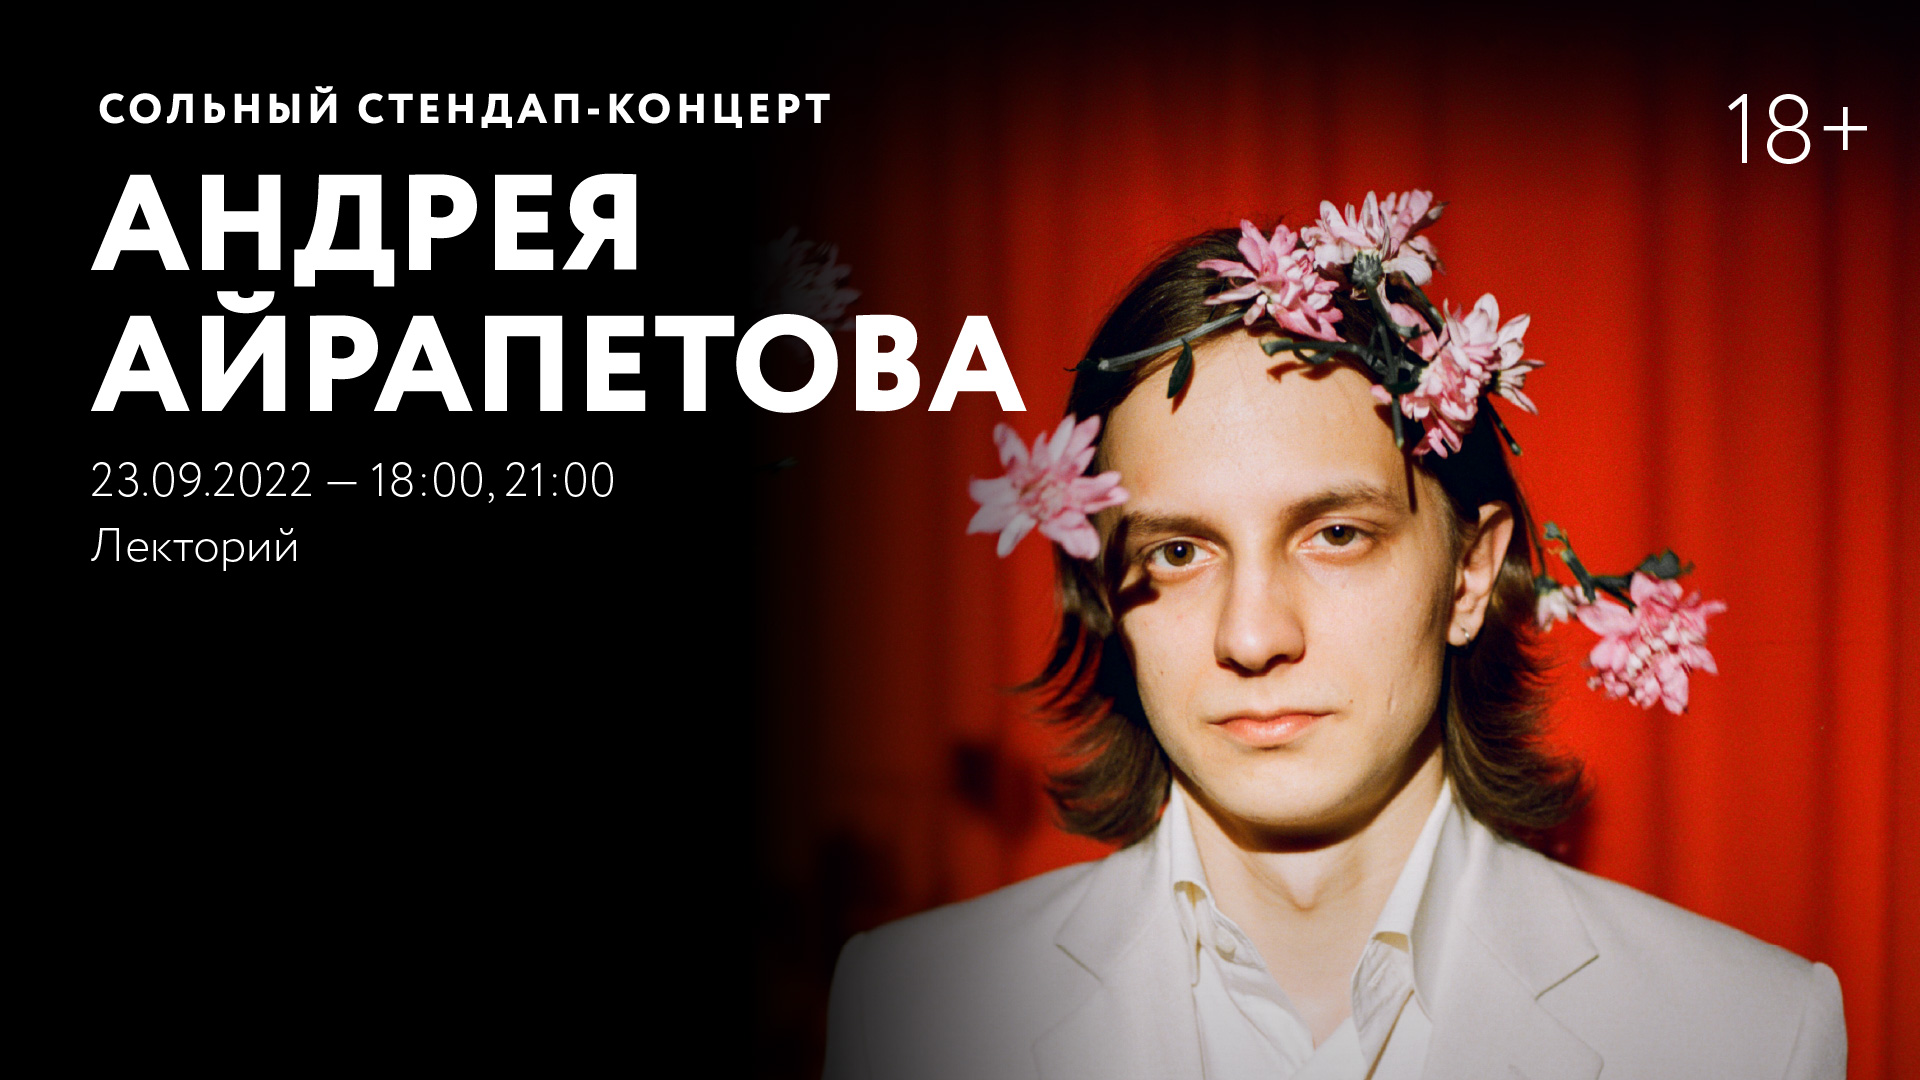 Сольный стендап-концерт Андрея Айрапетова